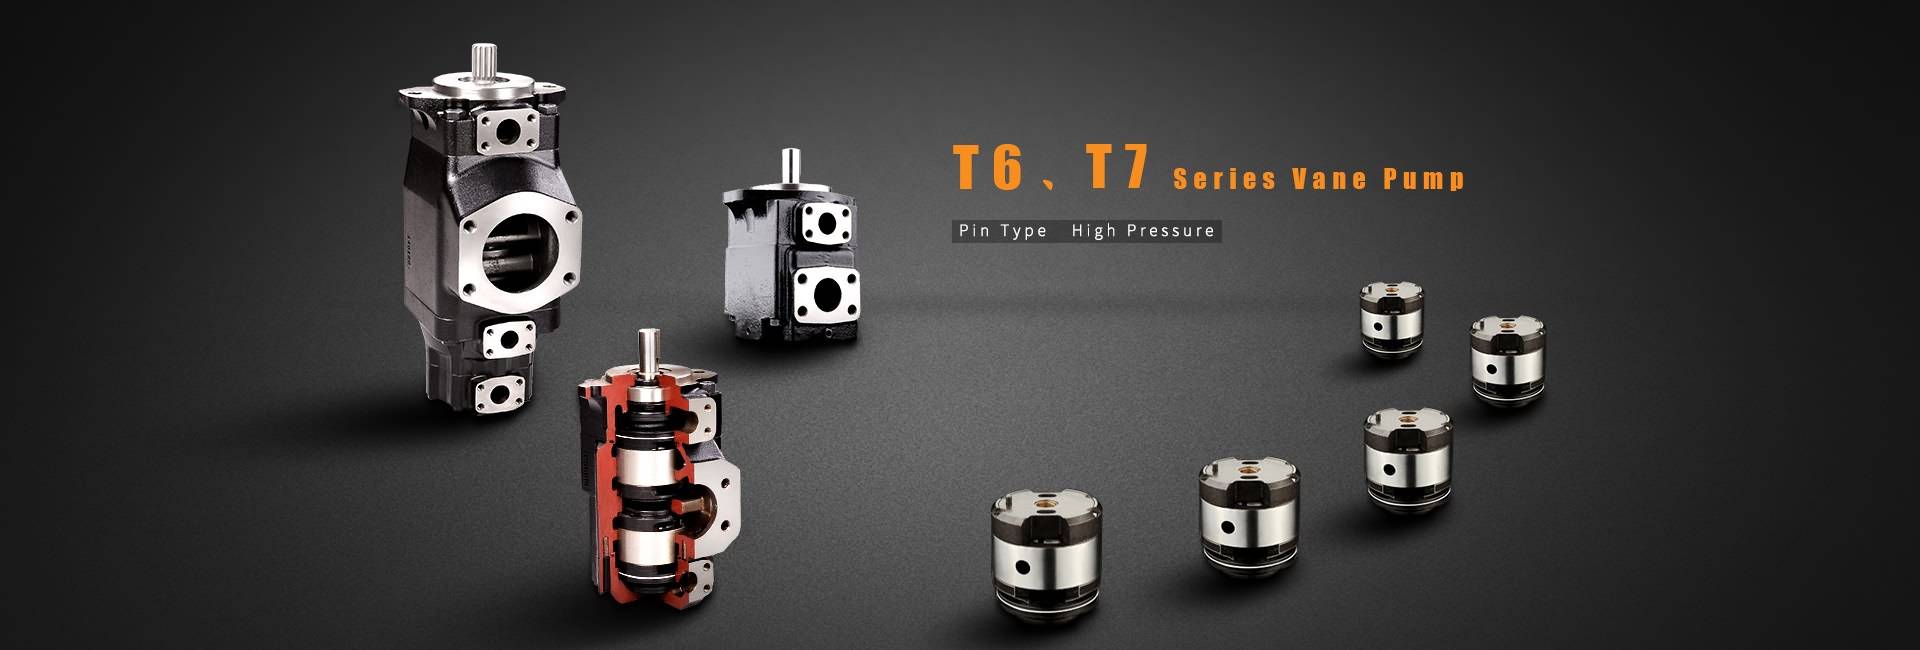 T6, T7 Series կարգավորման Pump